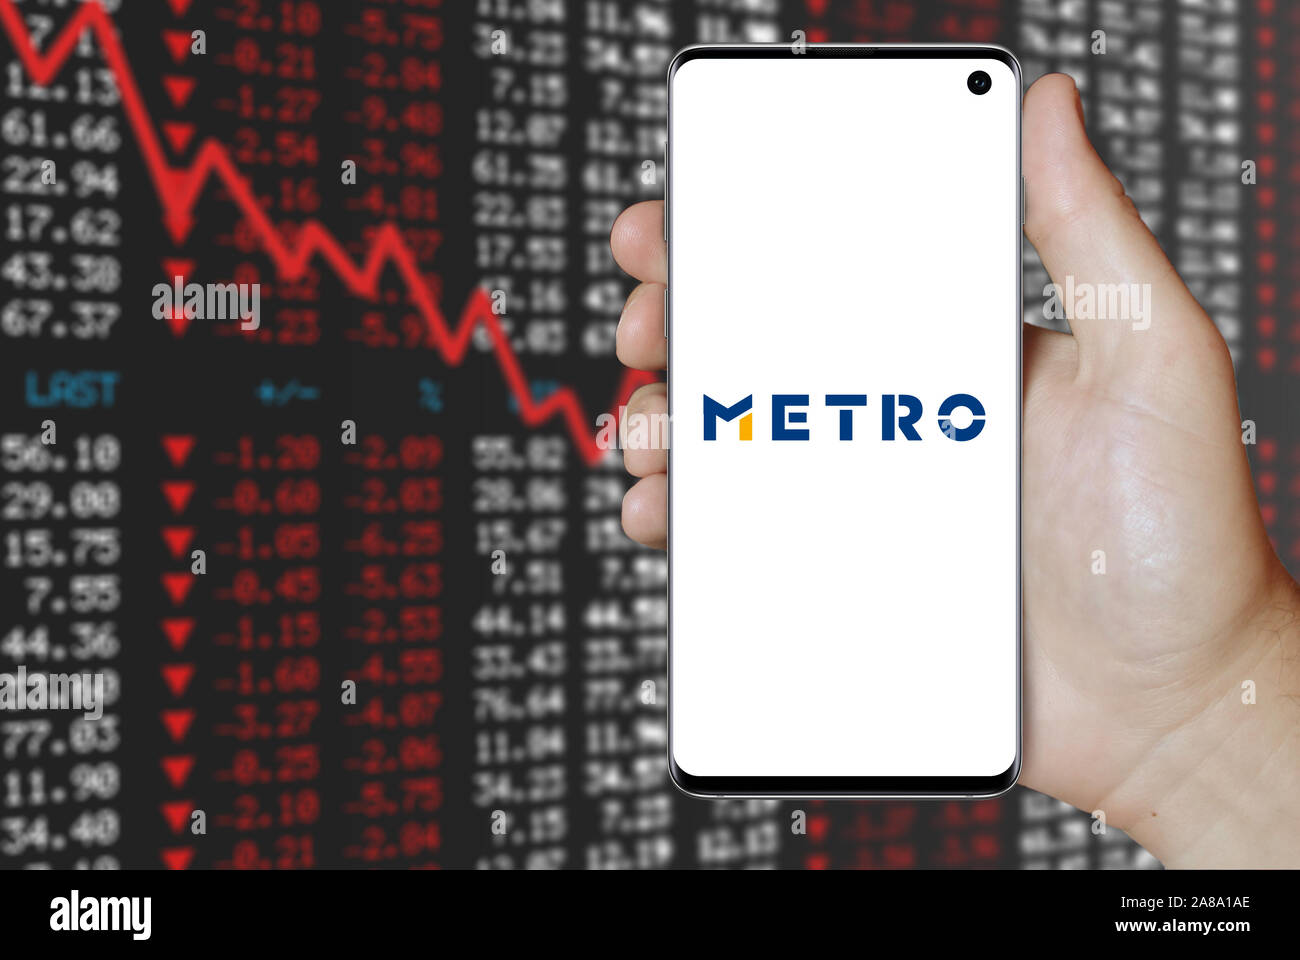 Logo der öffentlichen Unternehmen Metro AG auf dem Smartphone angezeigt. Negative Börse Hintergrund. Credit: PIXDUCE Stockfoto